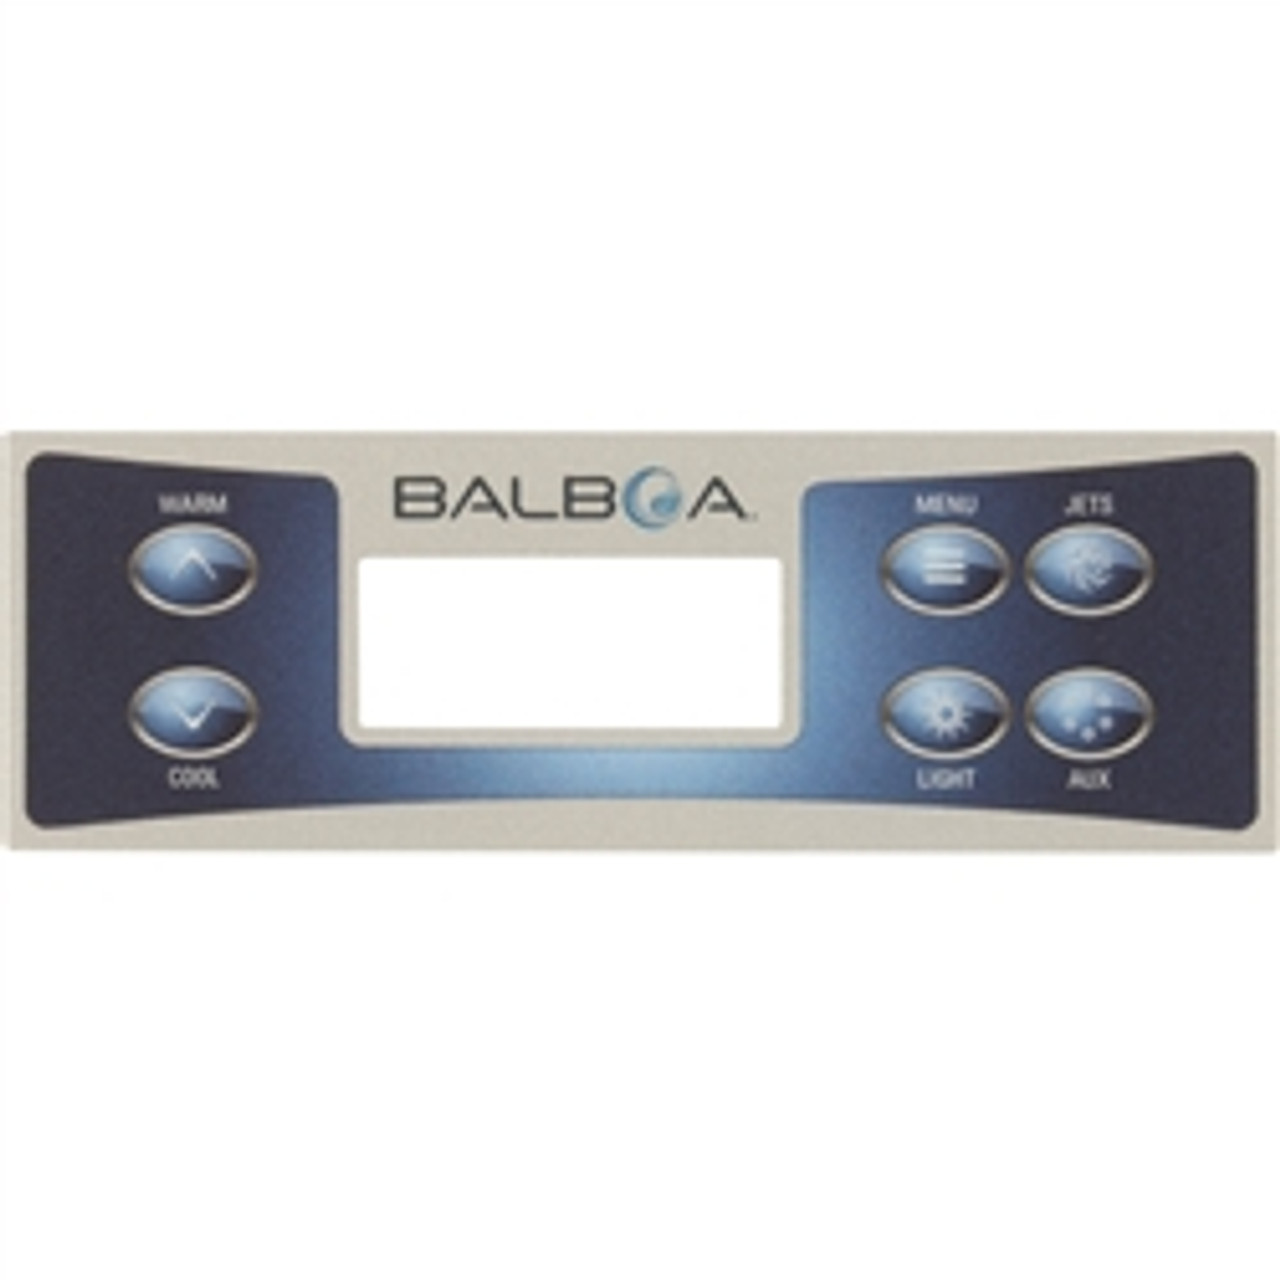 Balboa TP500 Rectangle Overlay Sticker, 6 button, 17183